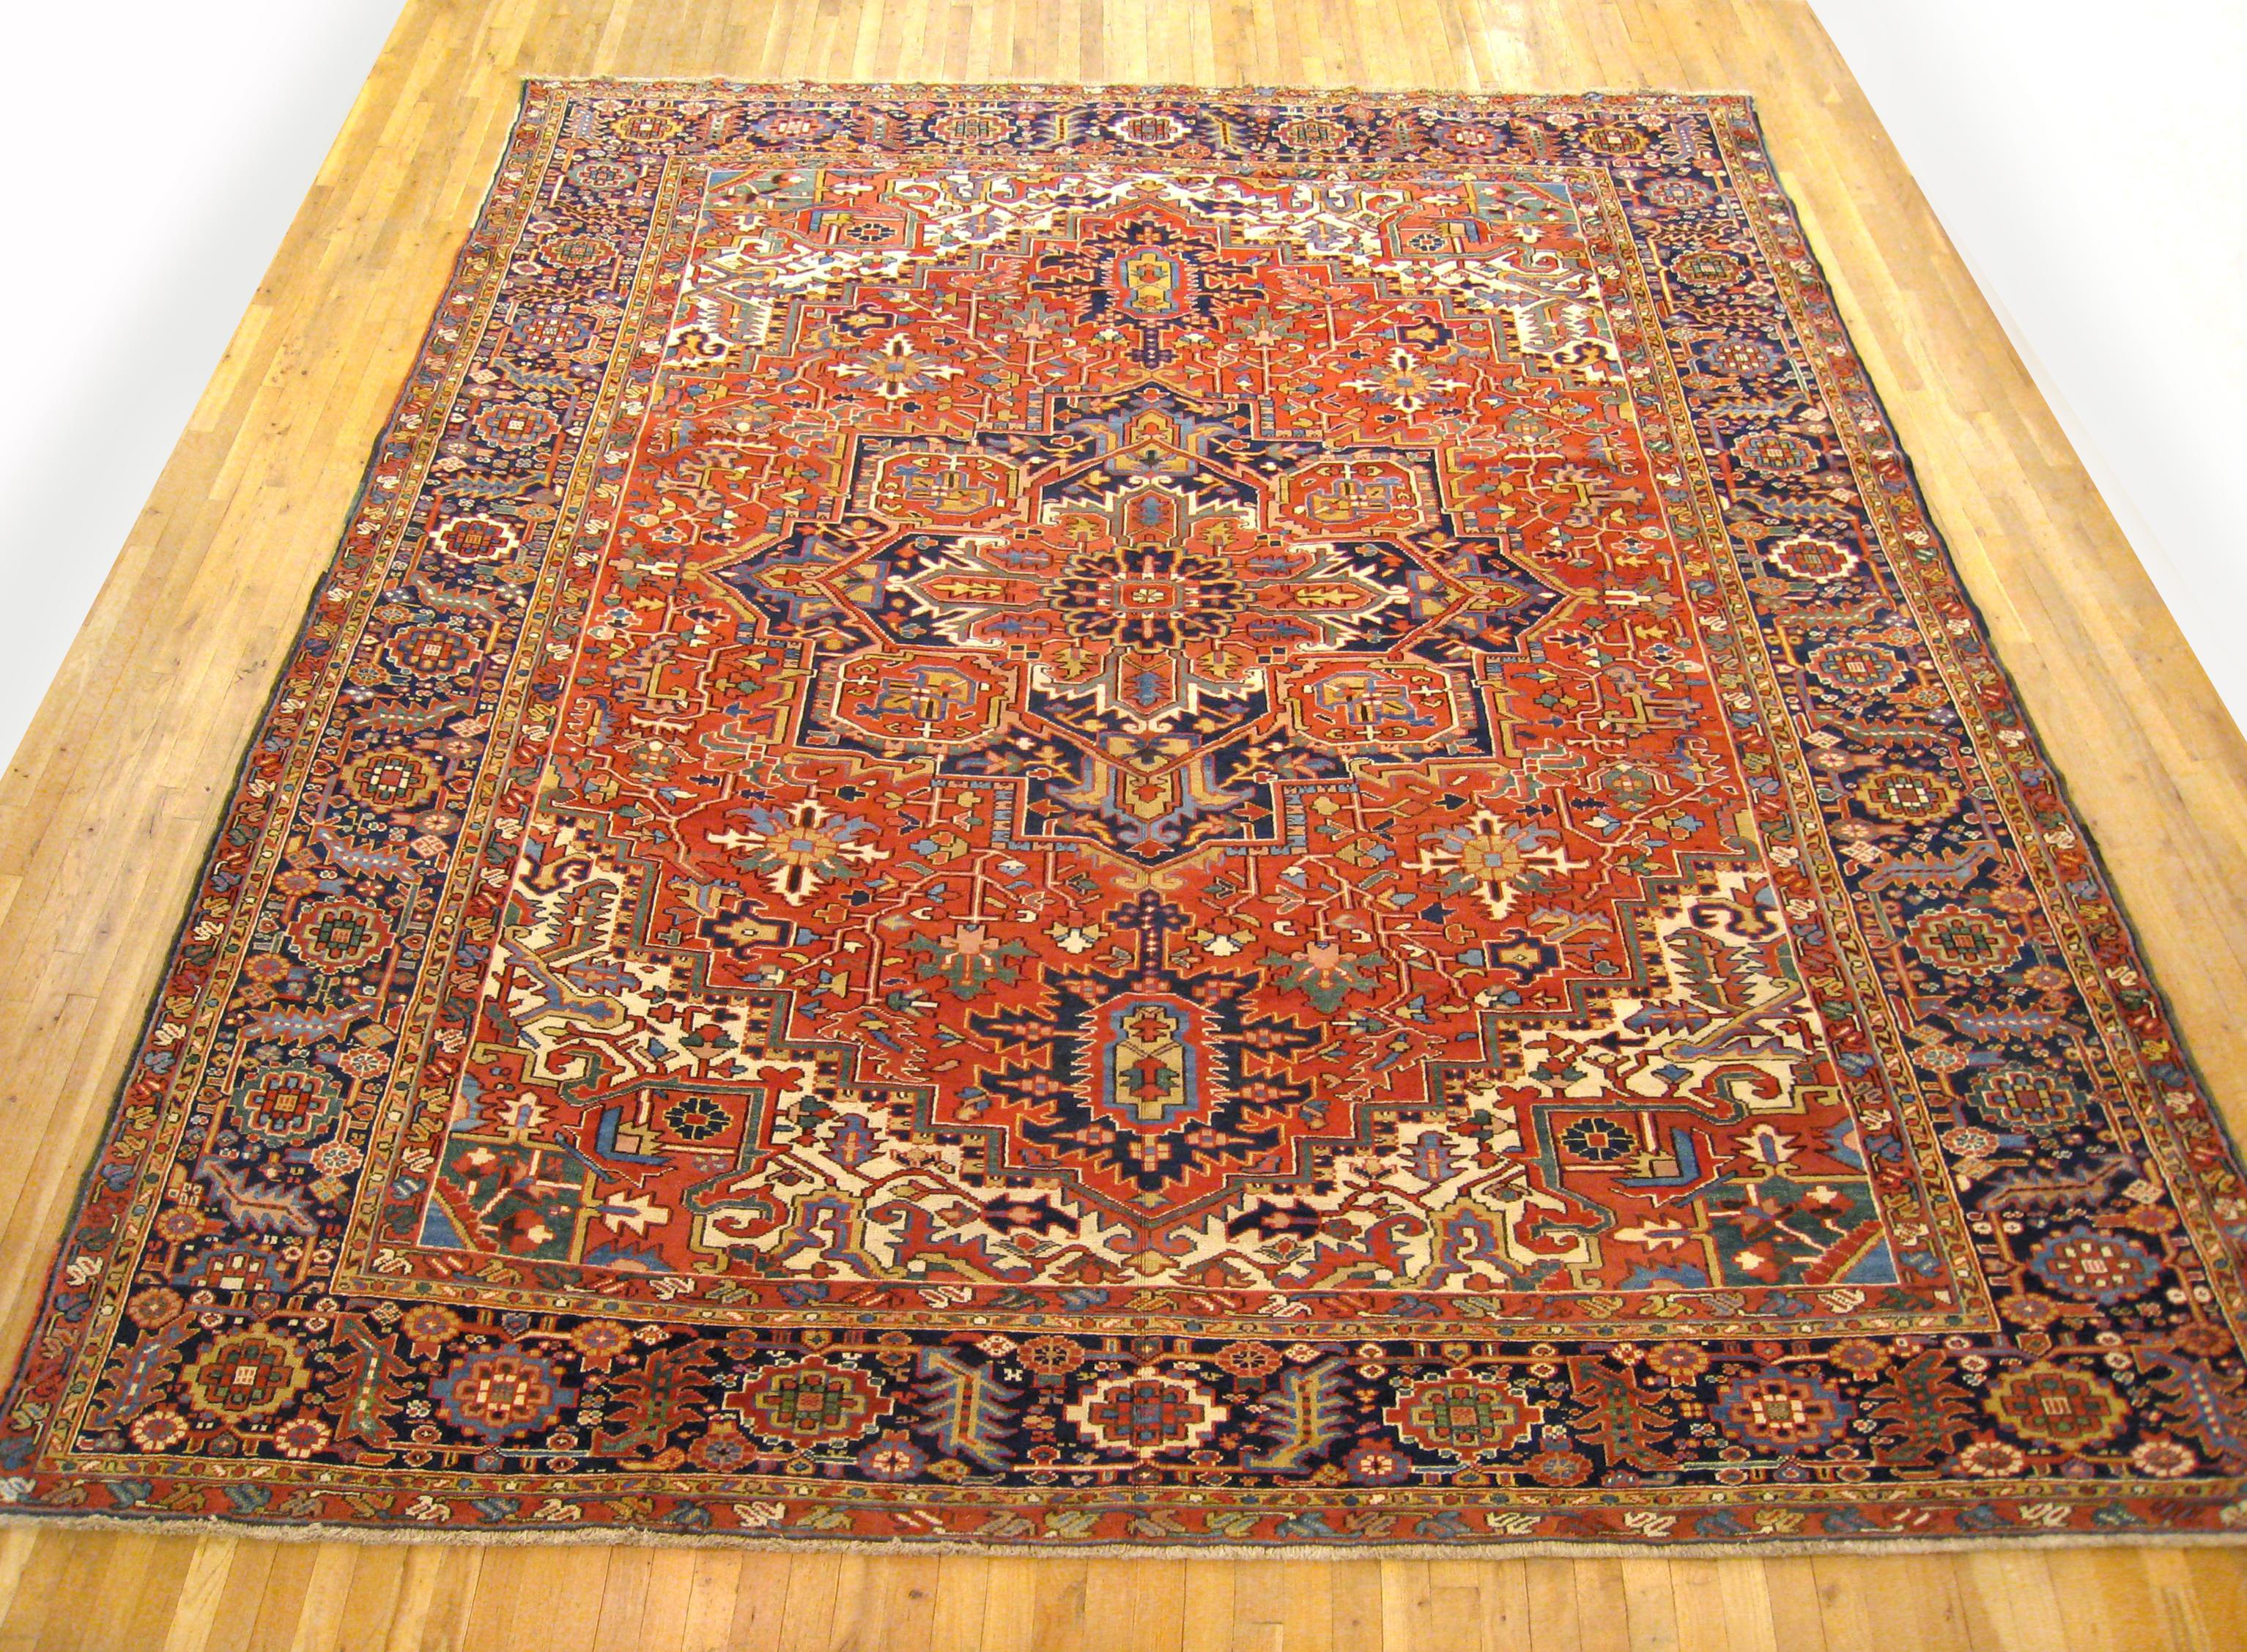 Antique Persian Heriz Oriental rug, Room size

An antique Persian Heriz oriental rug, size 13'1